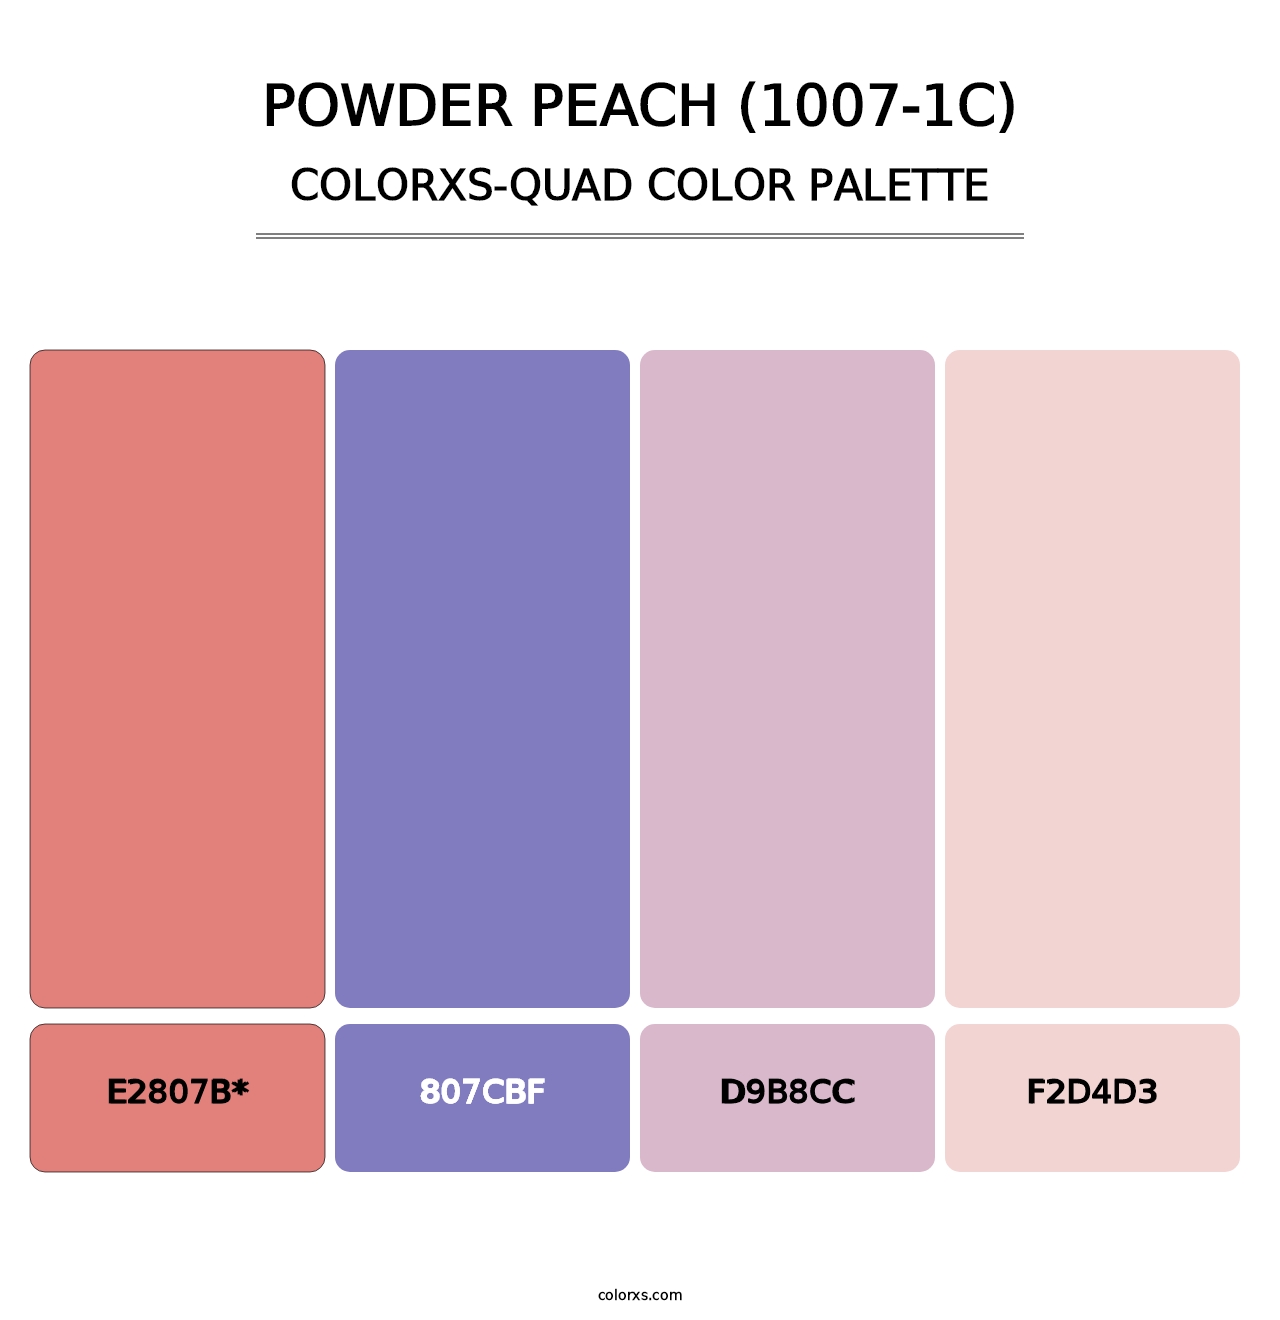 Powder Peach (1007-1C) - Colorxs Quad Palette